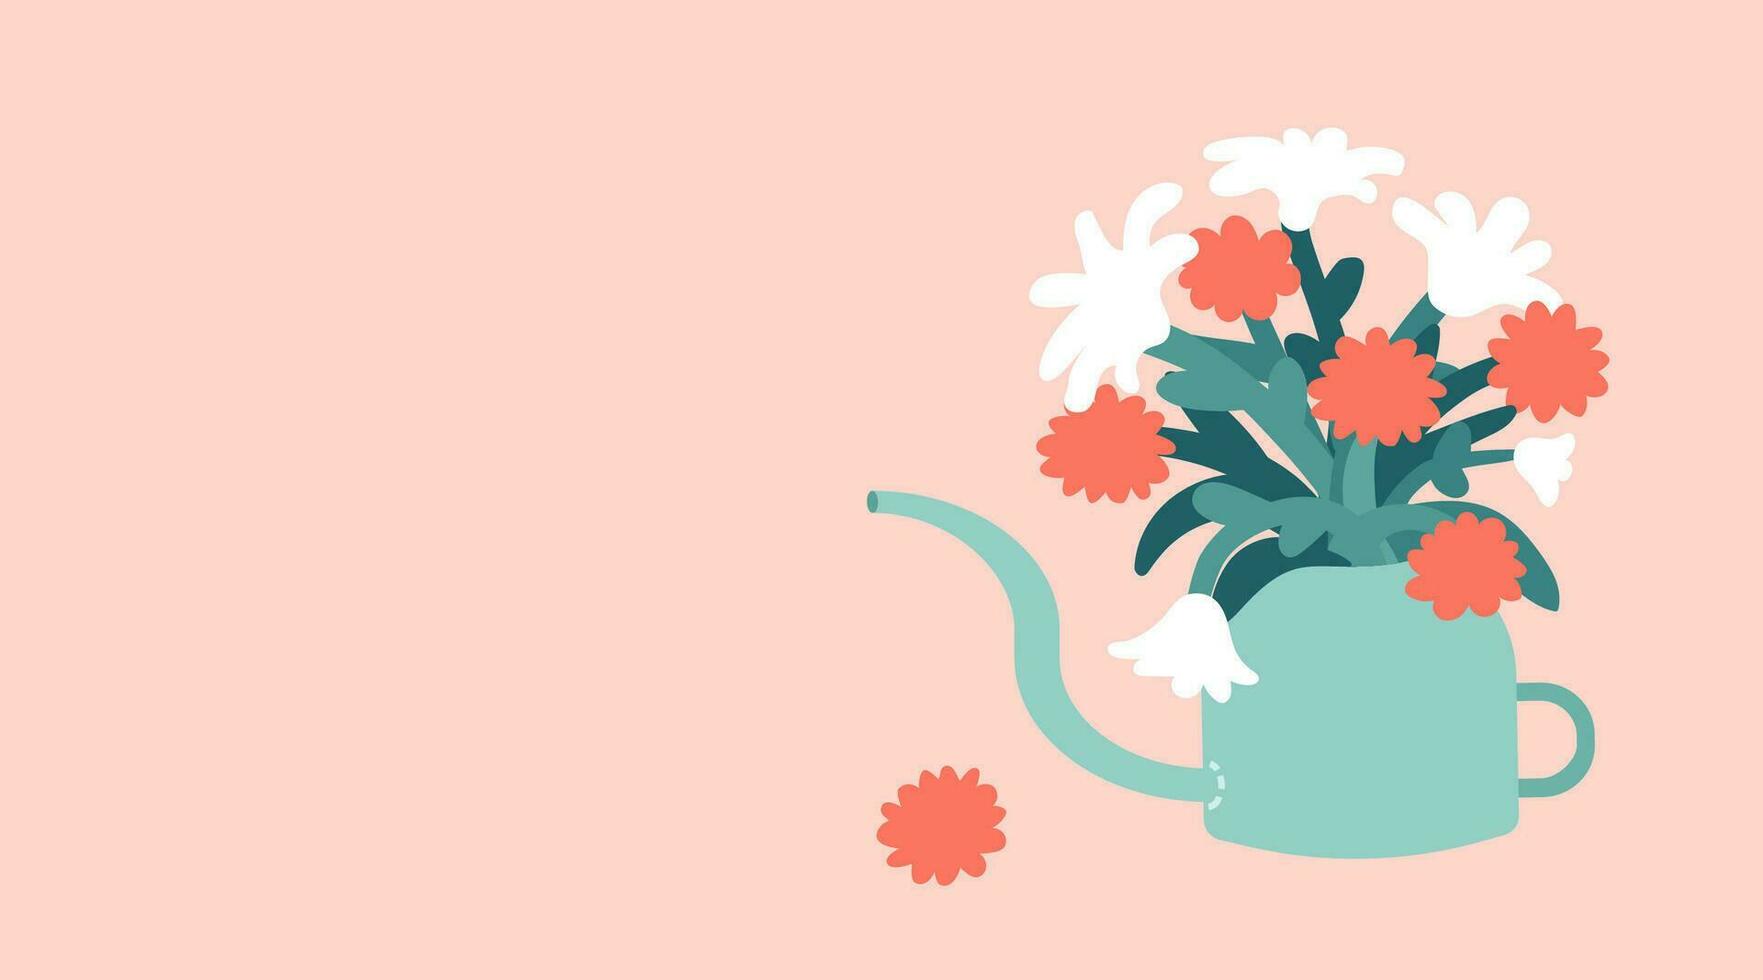 vector botanisch illustratie met bloem boeket in water kan. vlak tulpen, chrysanten in pot gemaakt in pastel kleuren. banier voor Internationale moeder dag met kopiëren ruimte. oranje achtergrond